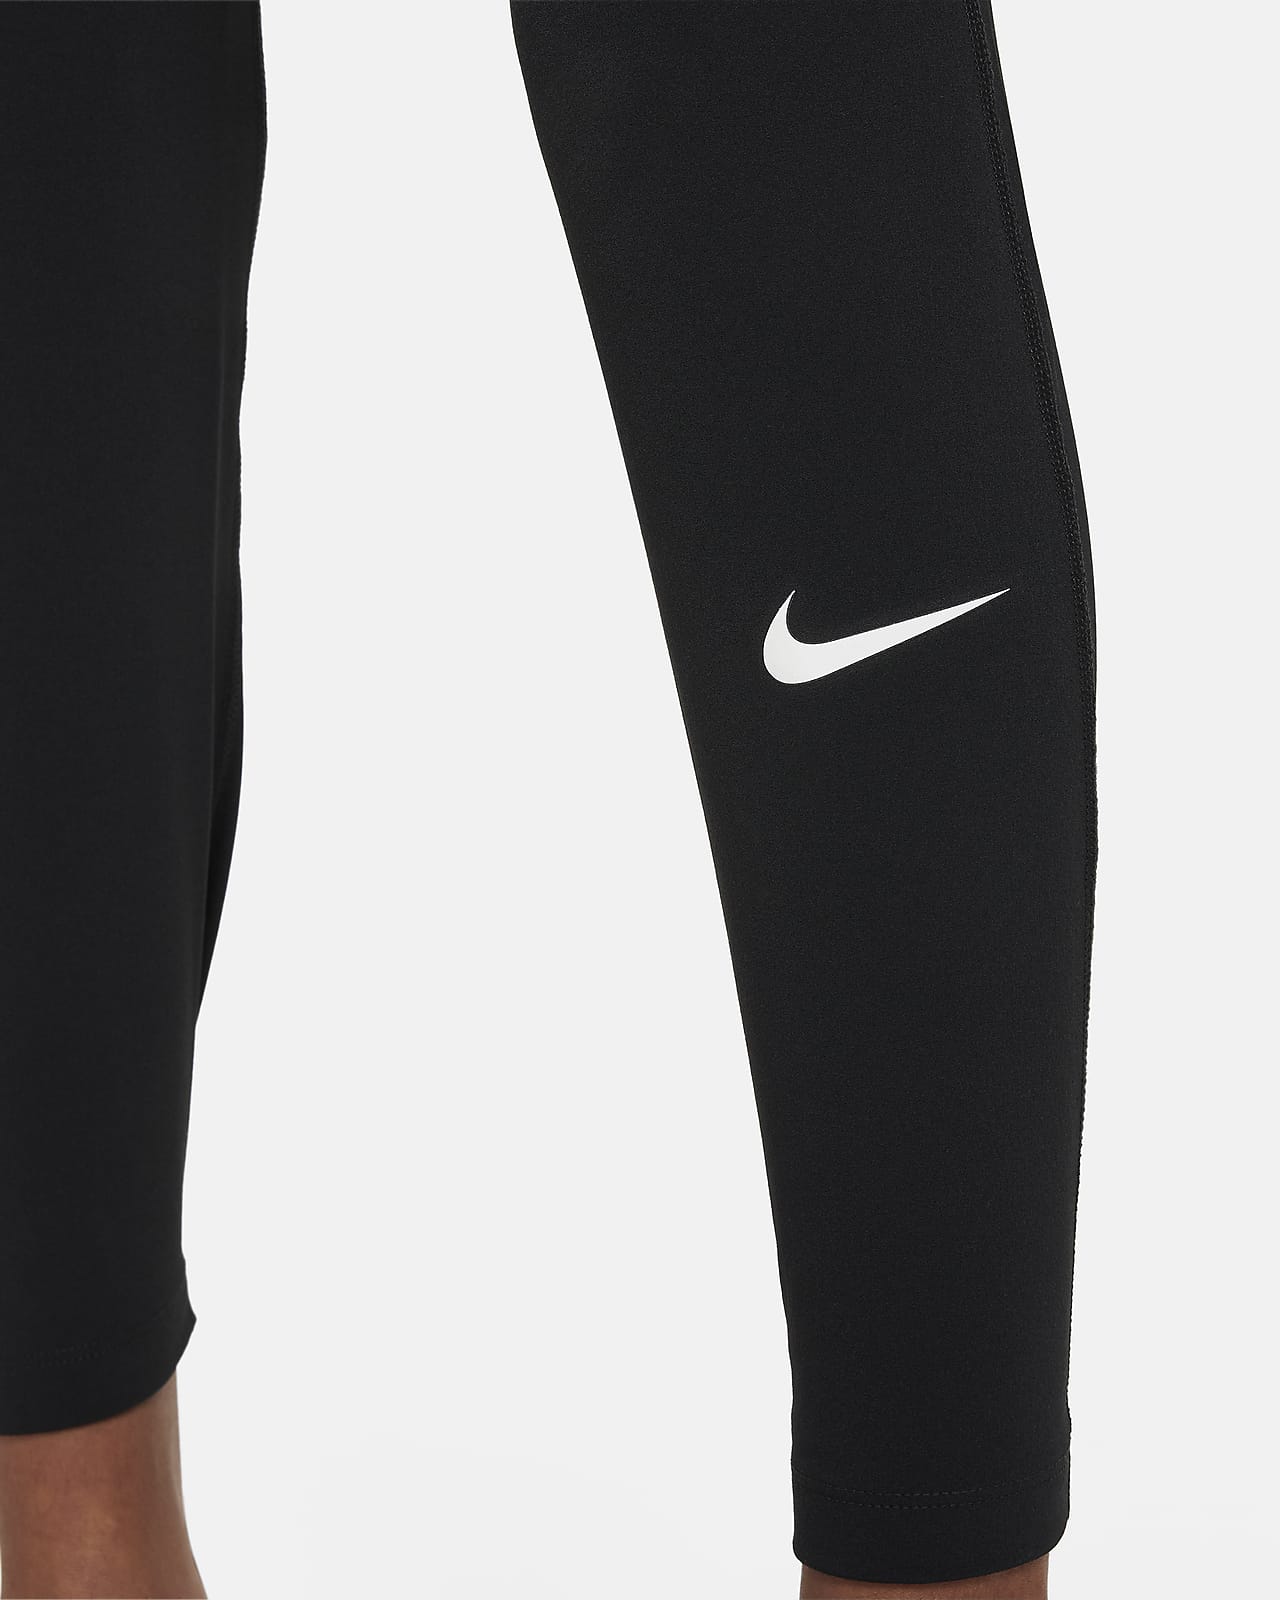 Nike Pro Tights Dri-FIT - Black